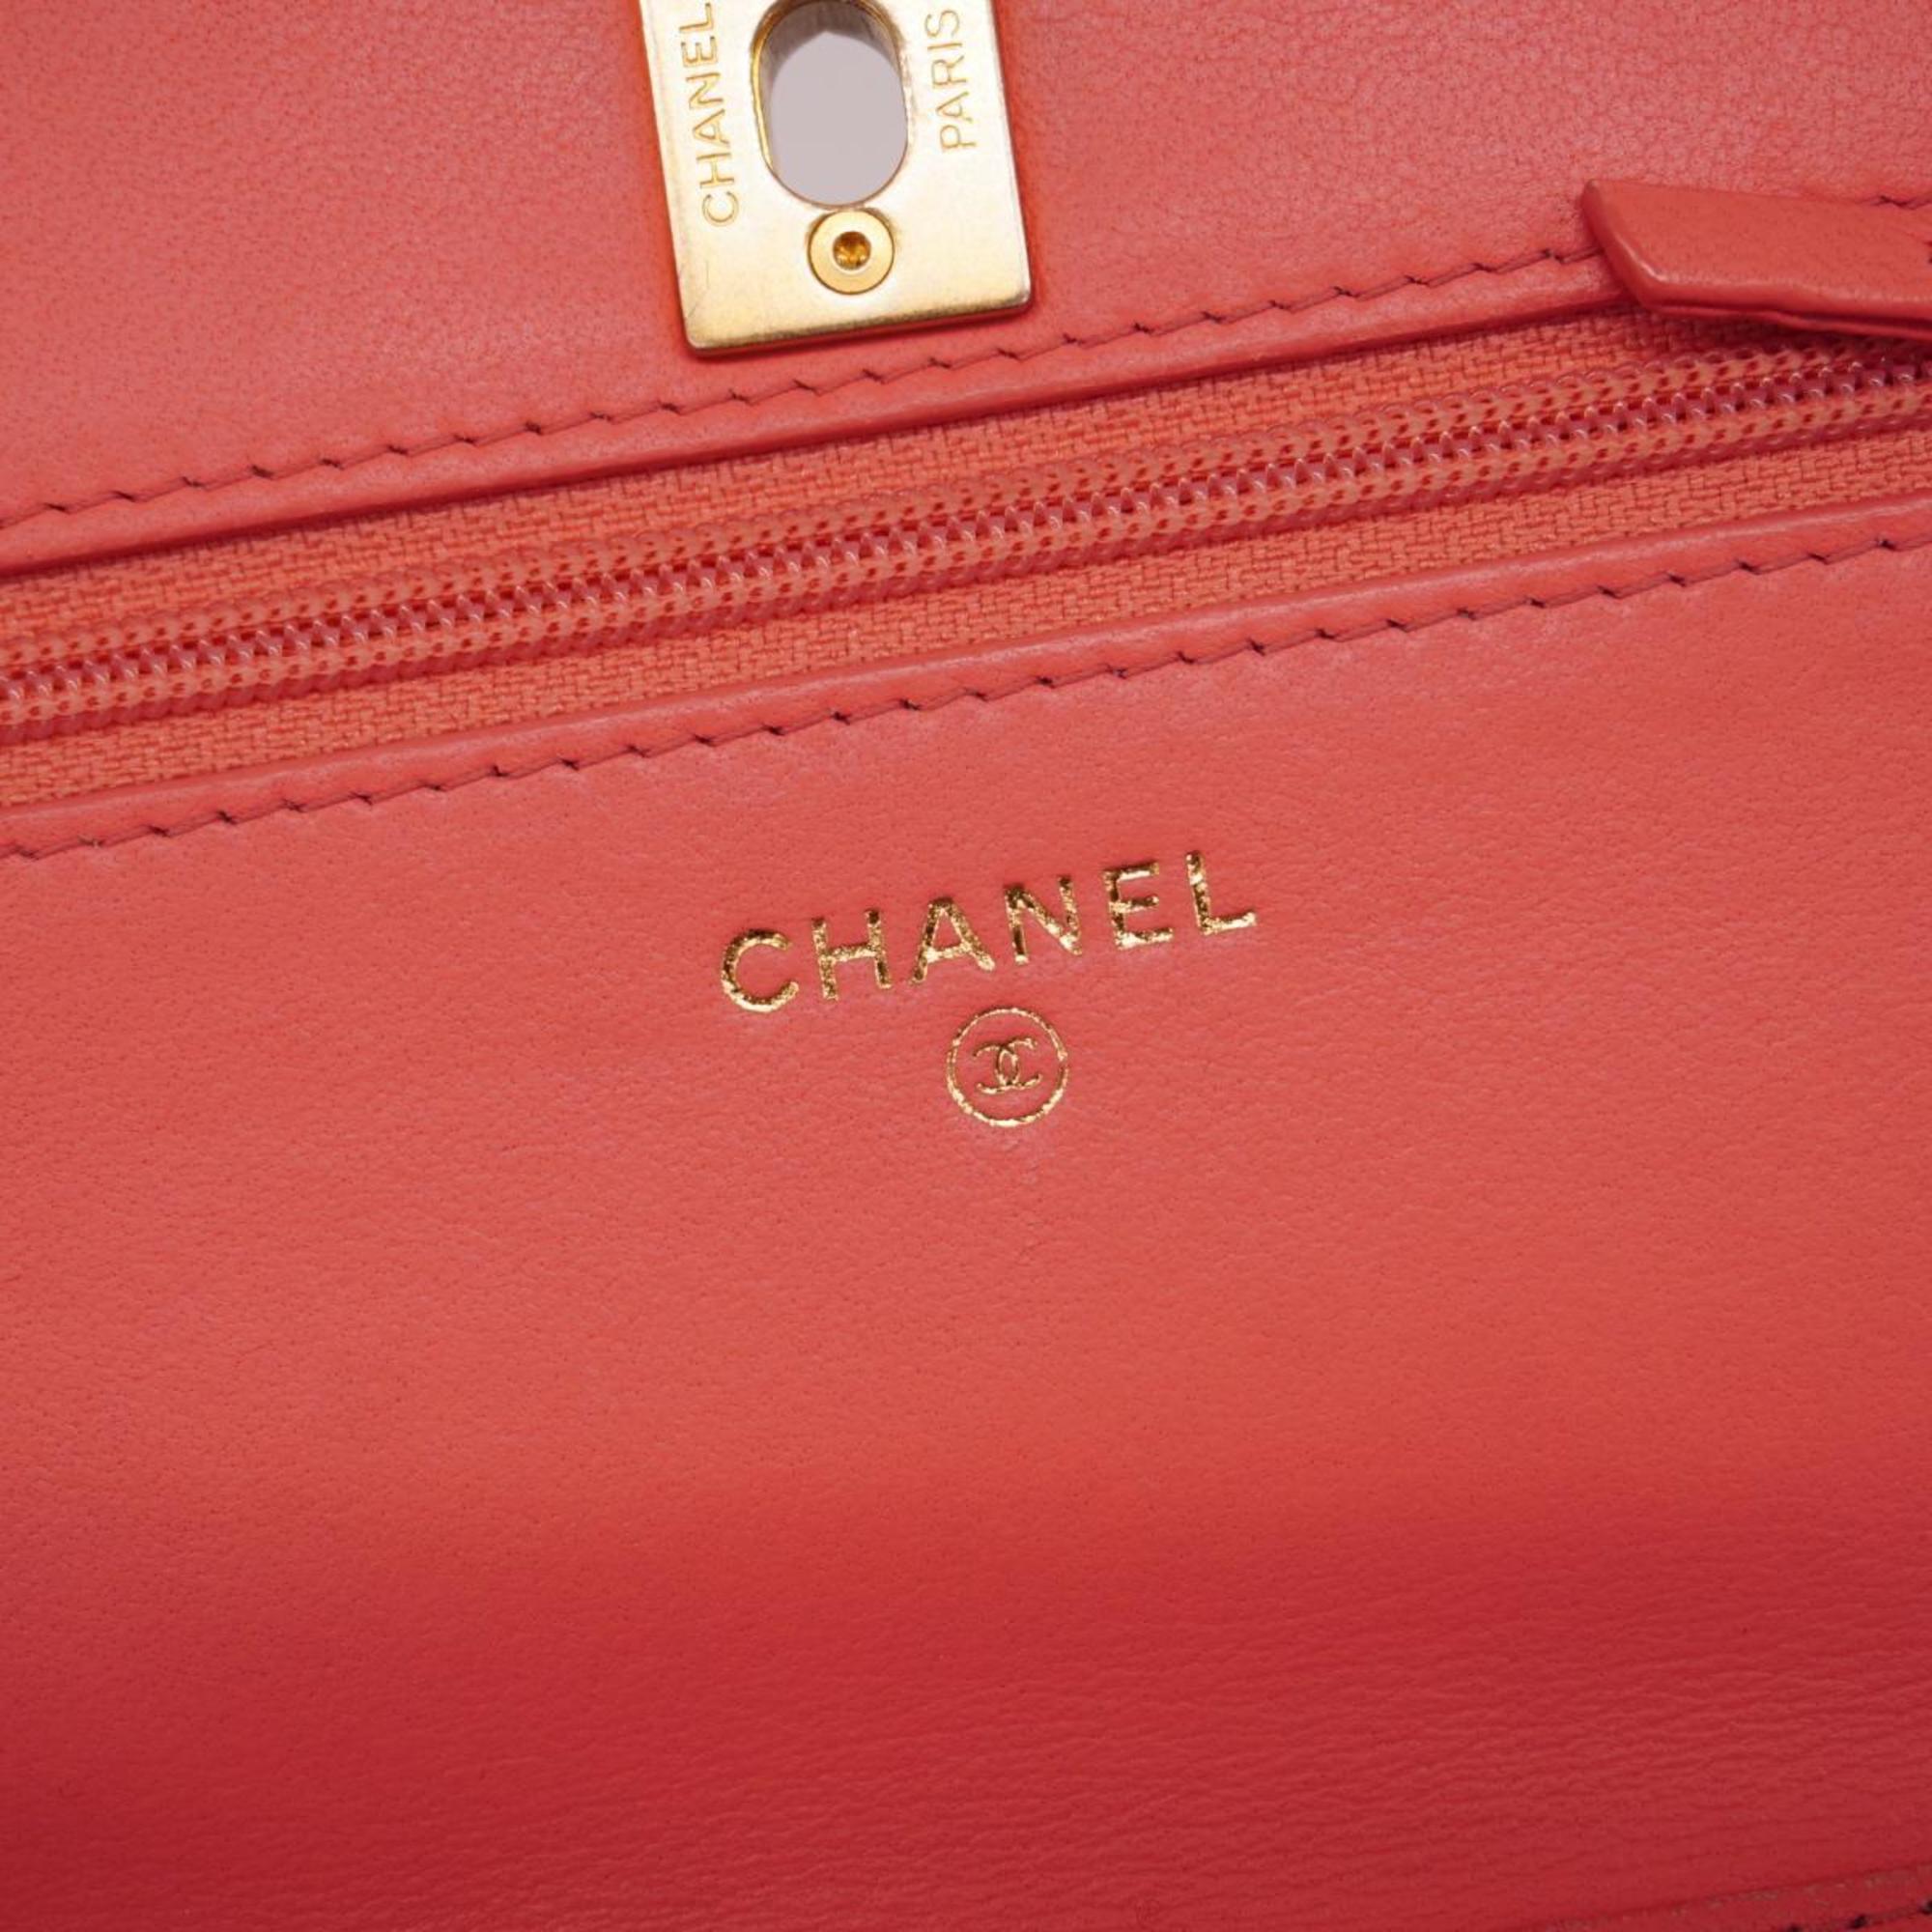 シャネル(Chanel) シャネル ショルダーウォレット マトラッセ チェーンショルダー ラムスキン ピンク   レディース